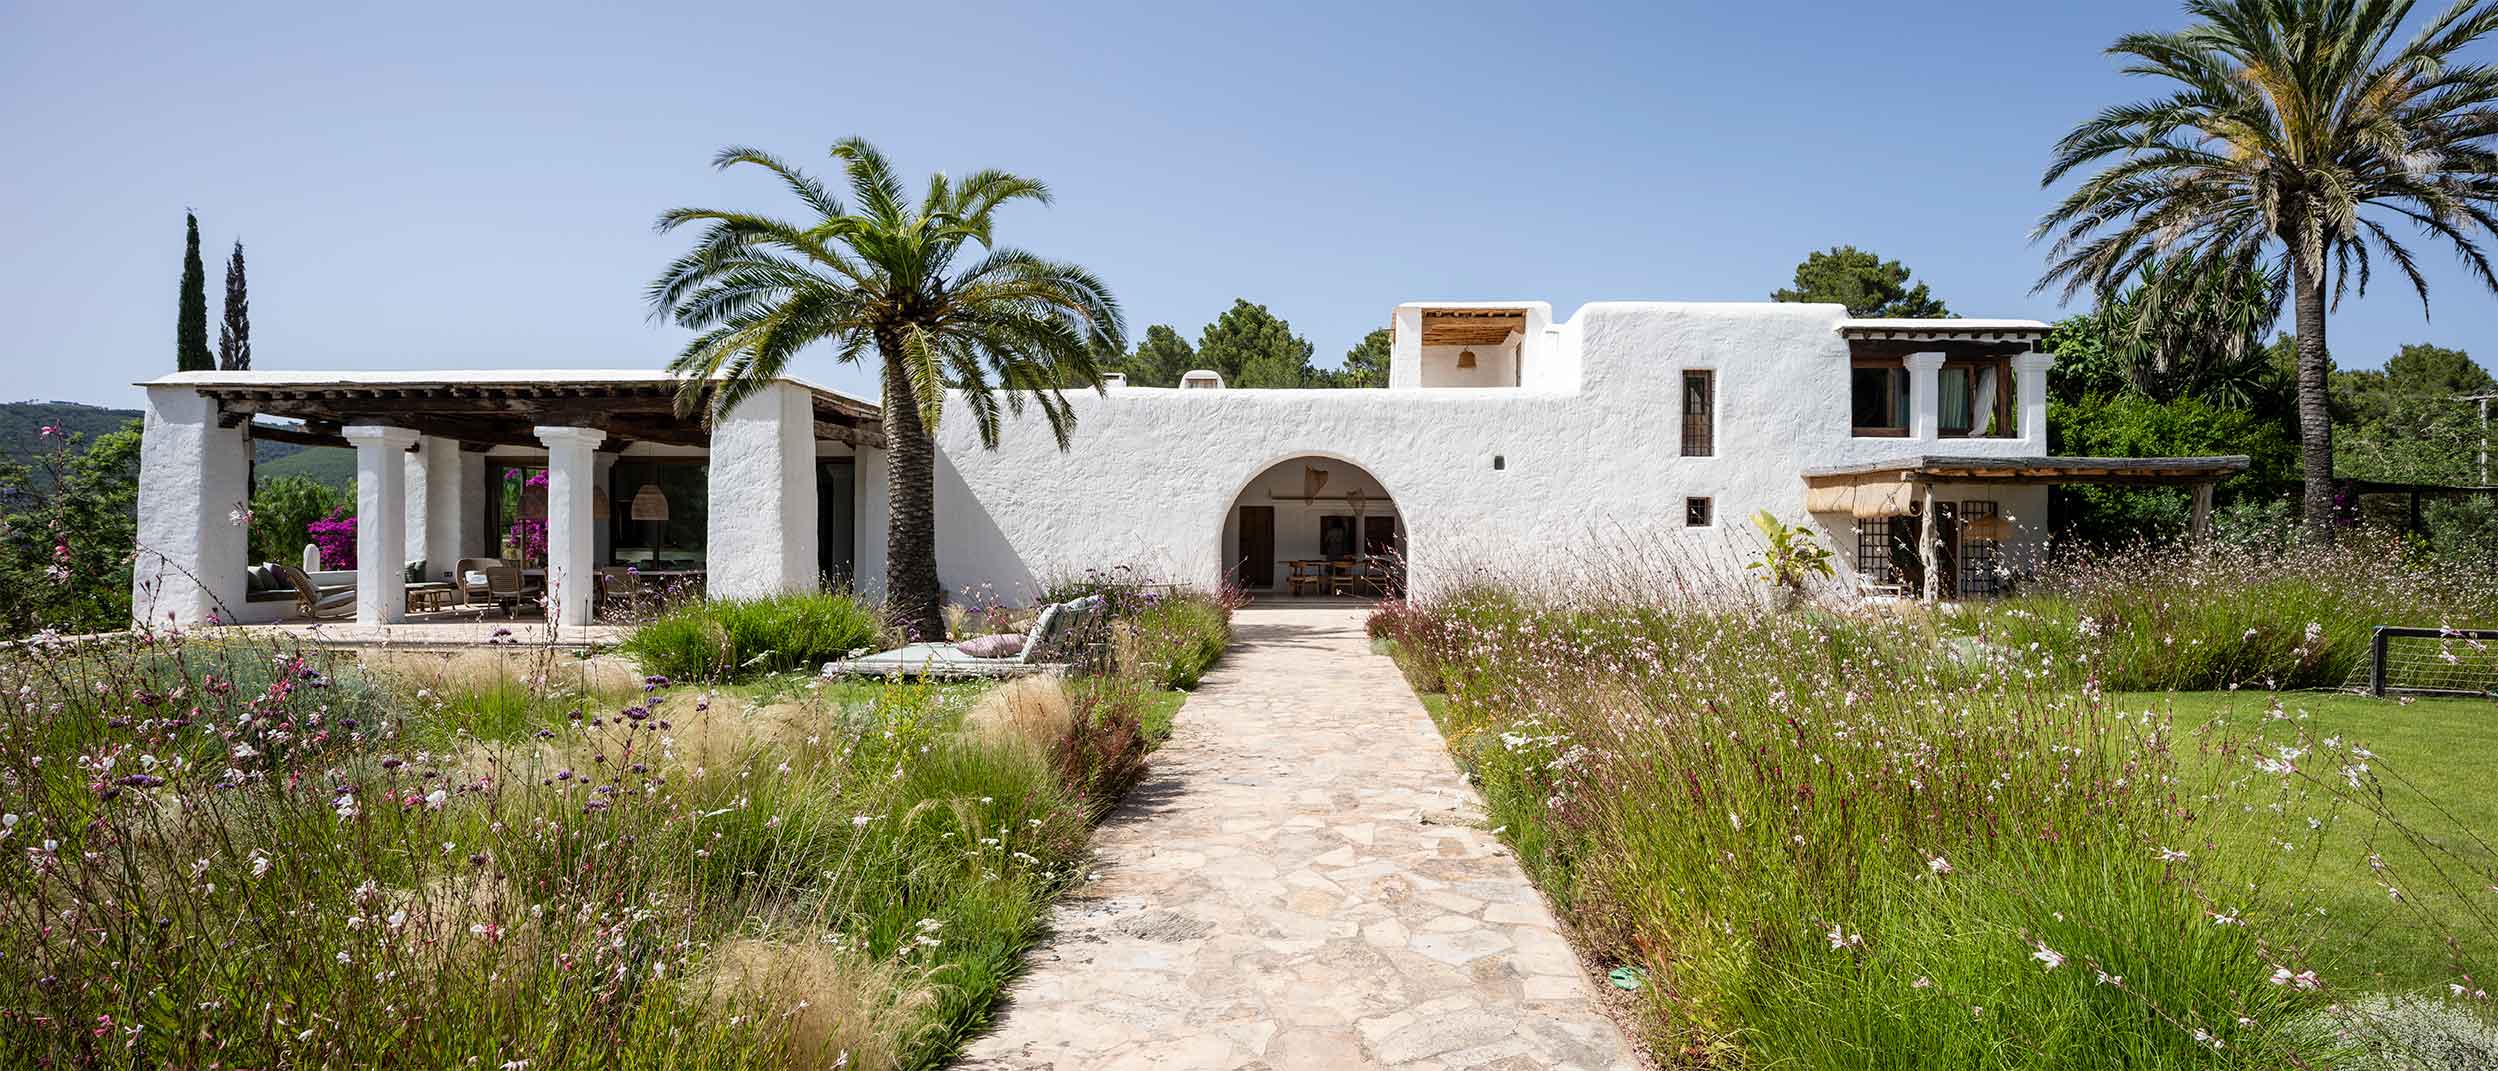 Vivienda reformada por el estudio de arquitectura KLARQ en Ibiza con muros blancos hacia un interior con mobiliario rústico.